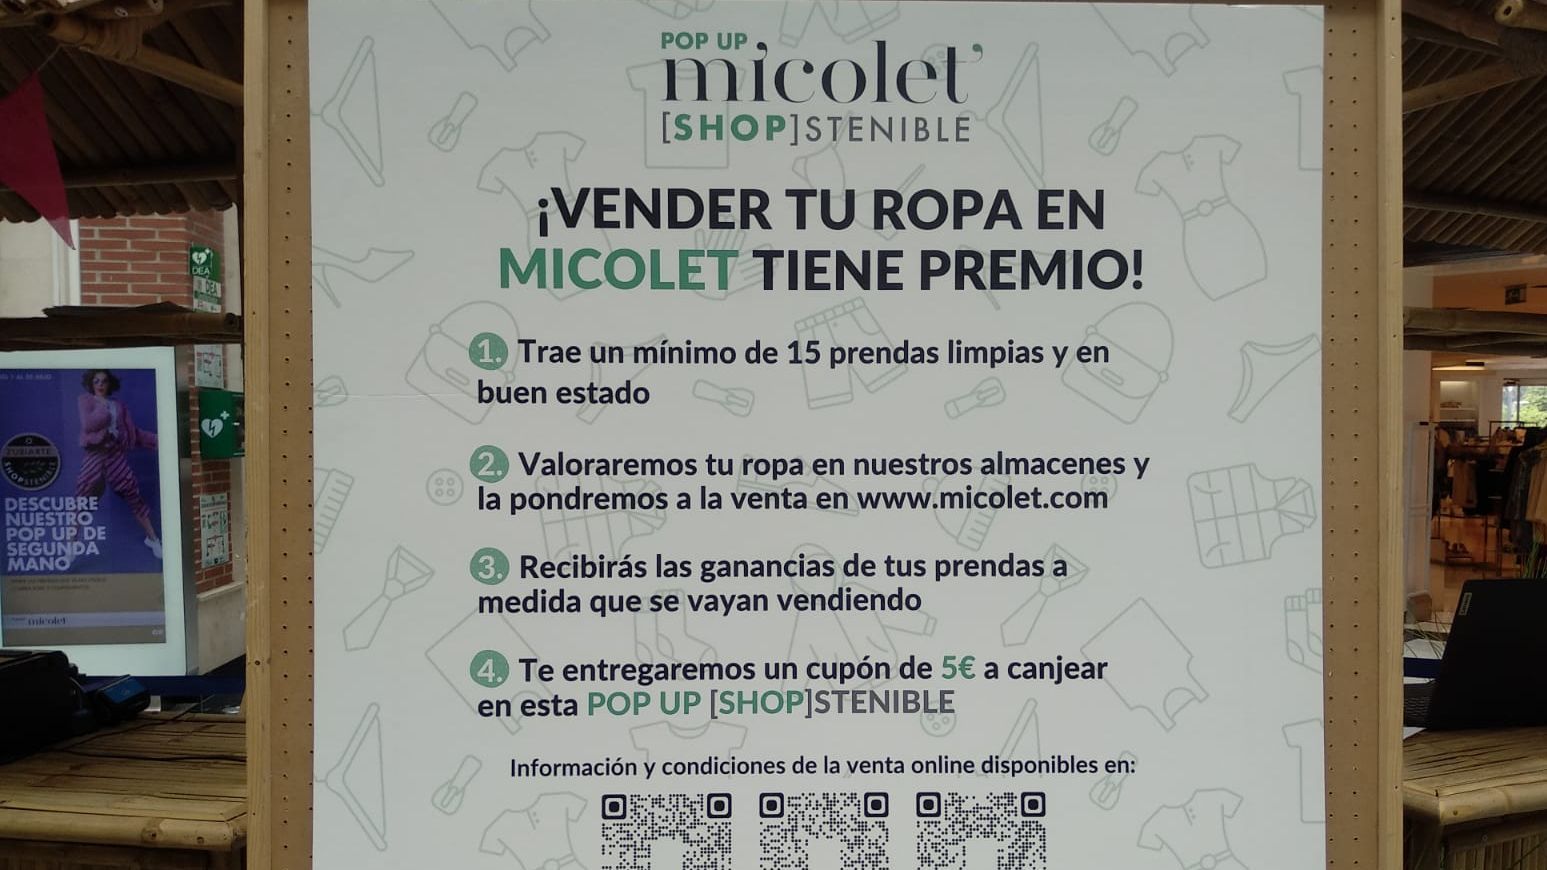 Micolet, la tienda on line de ropa usada, abre una tienda física durante  julio en Bilbao - NIUS